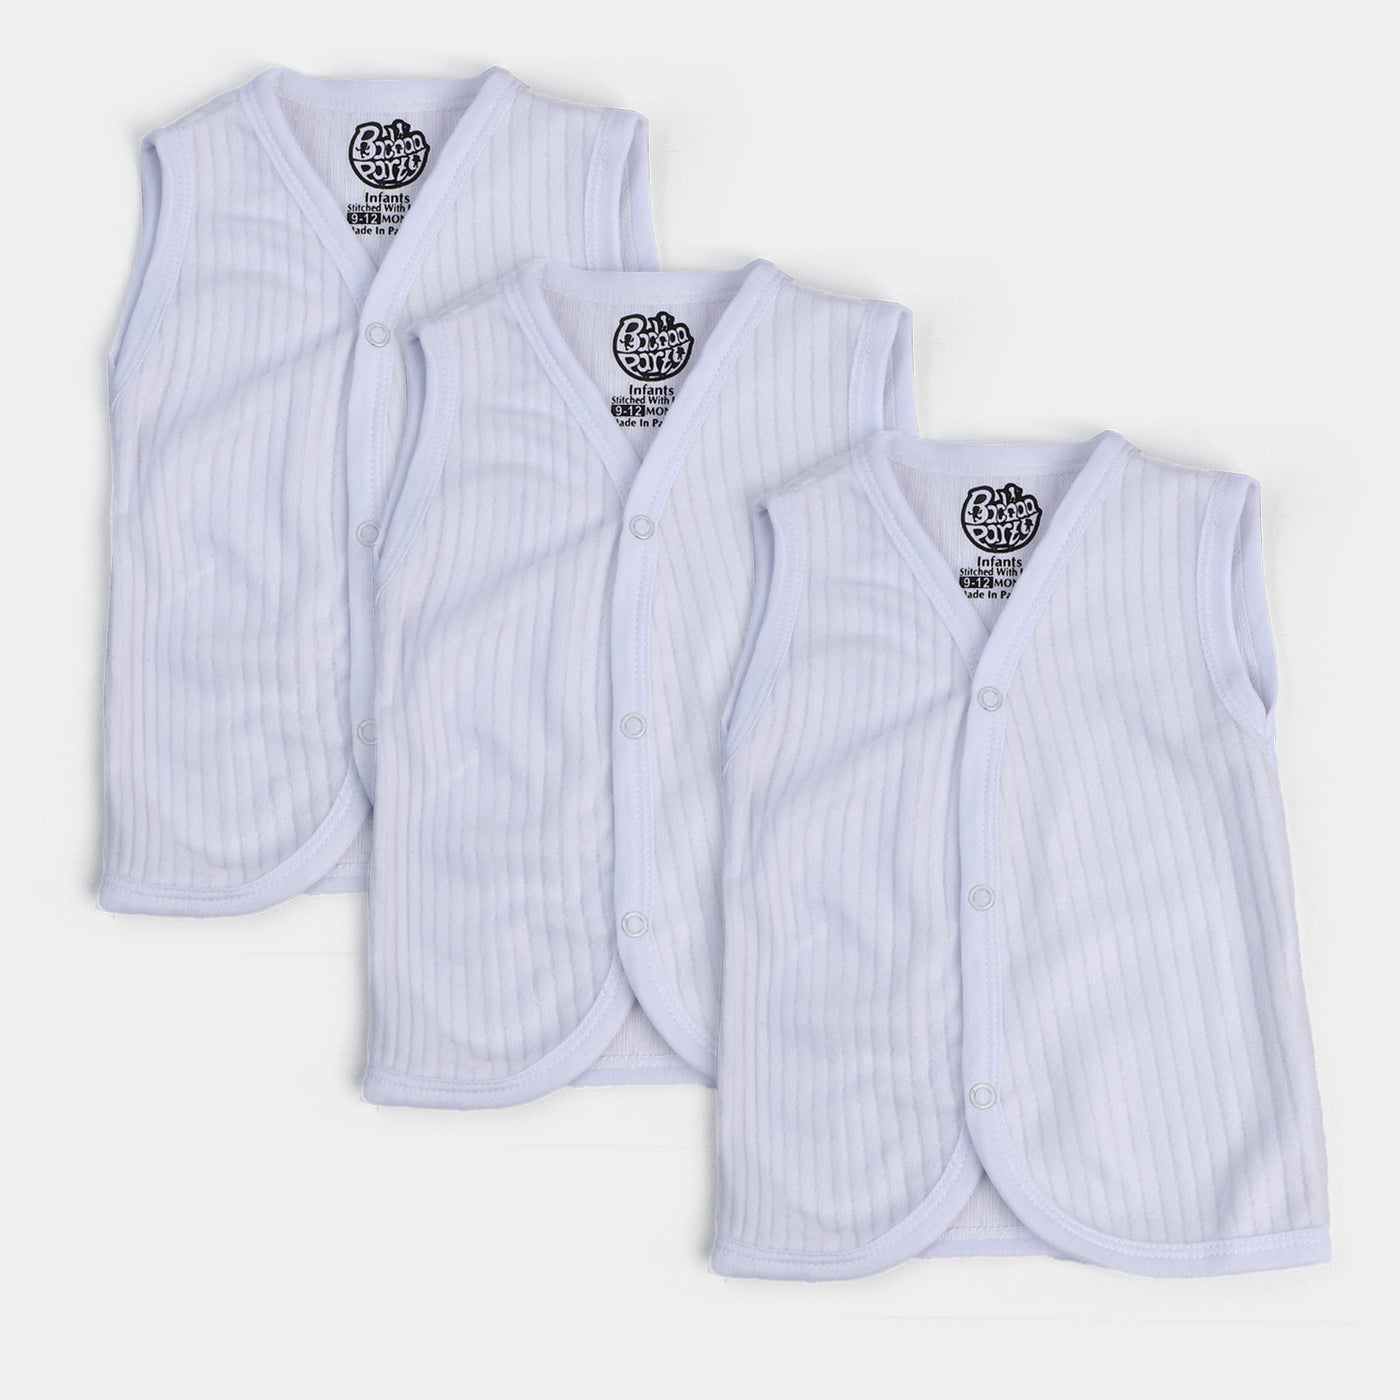 Infant Pack of 3 Unisex Warm Vest - White